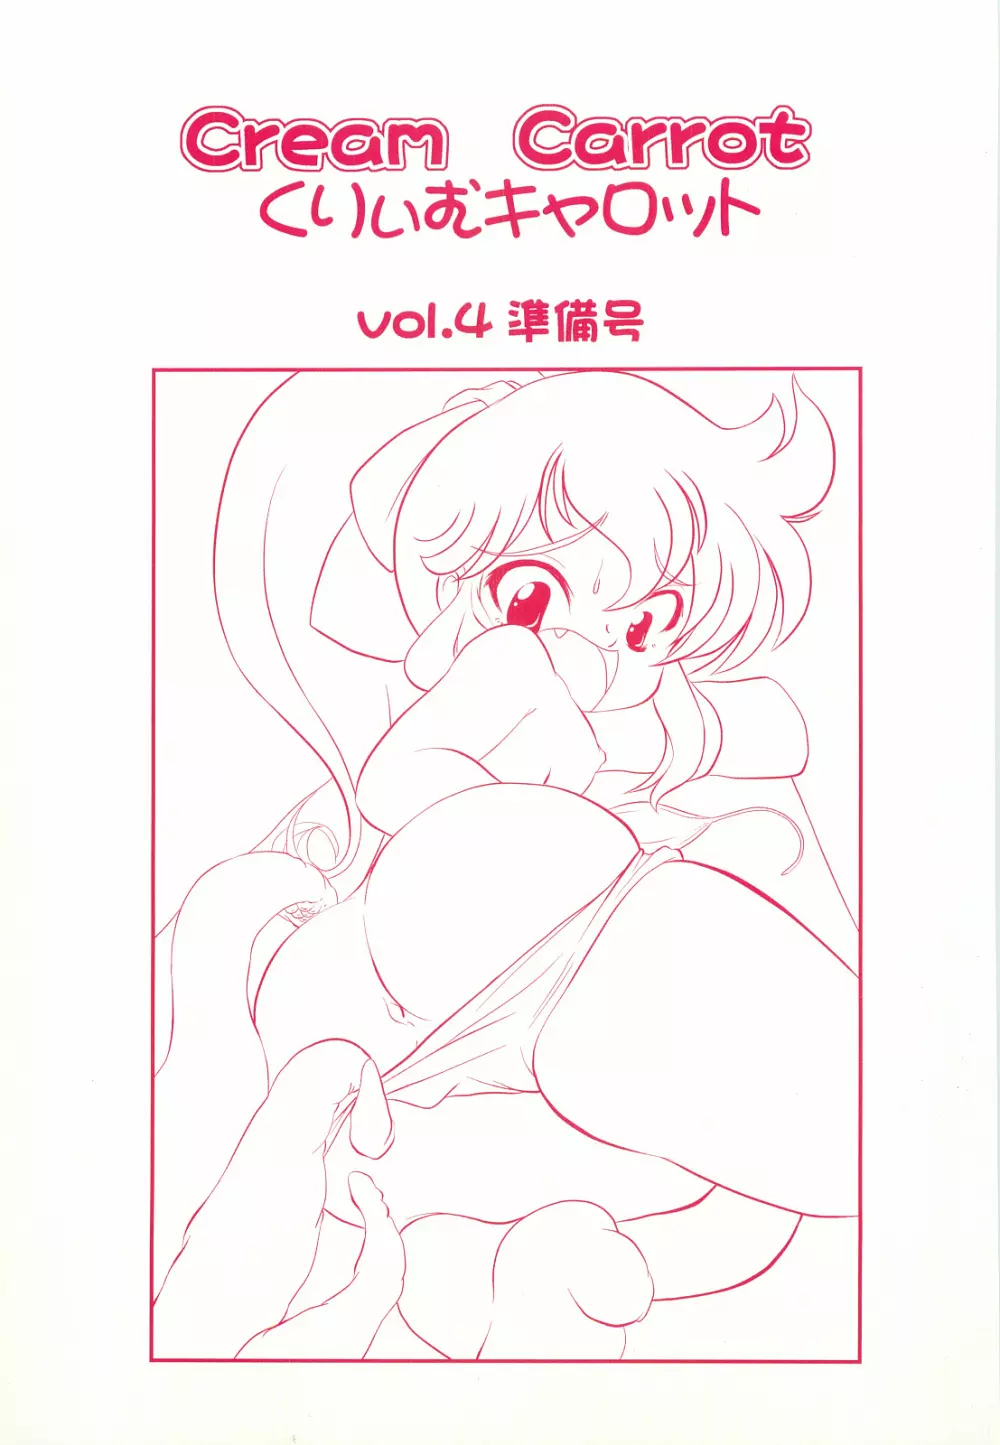 くりぃむキャロット vol.4 準備号 1ページ